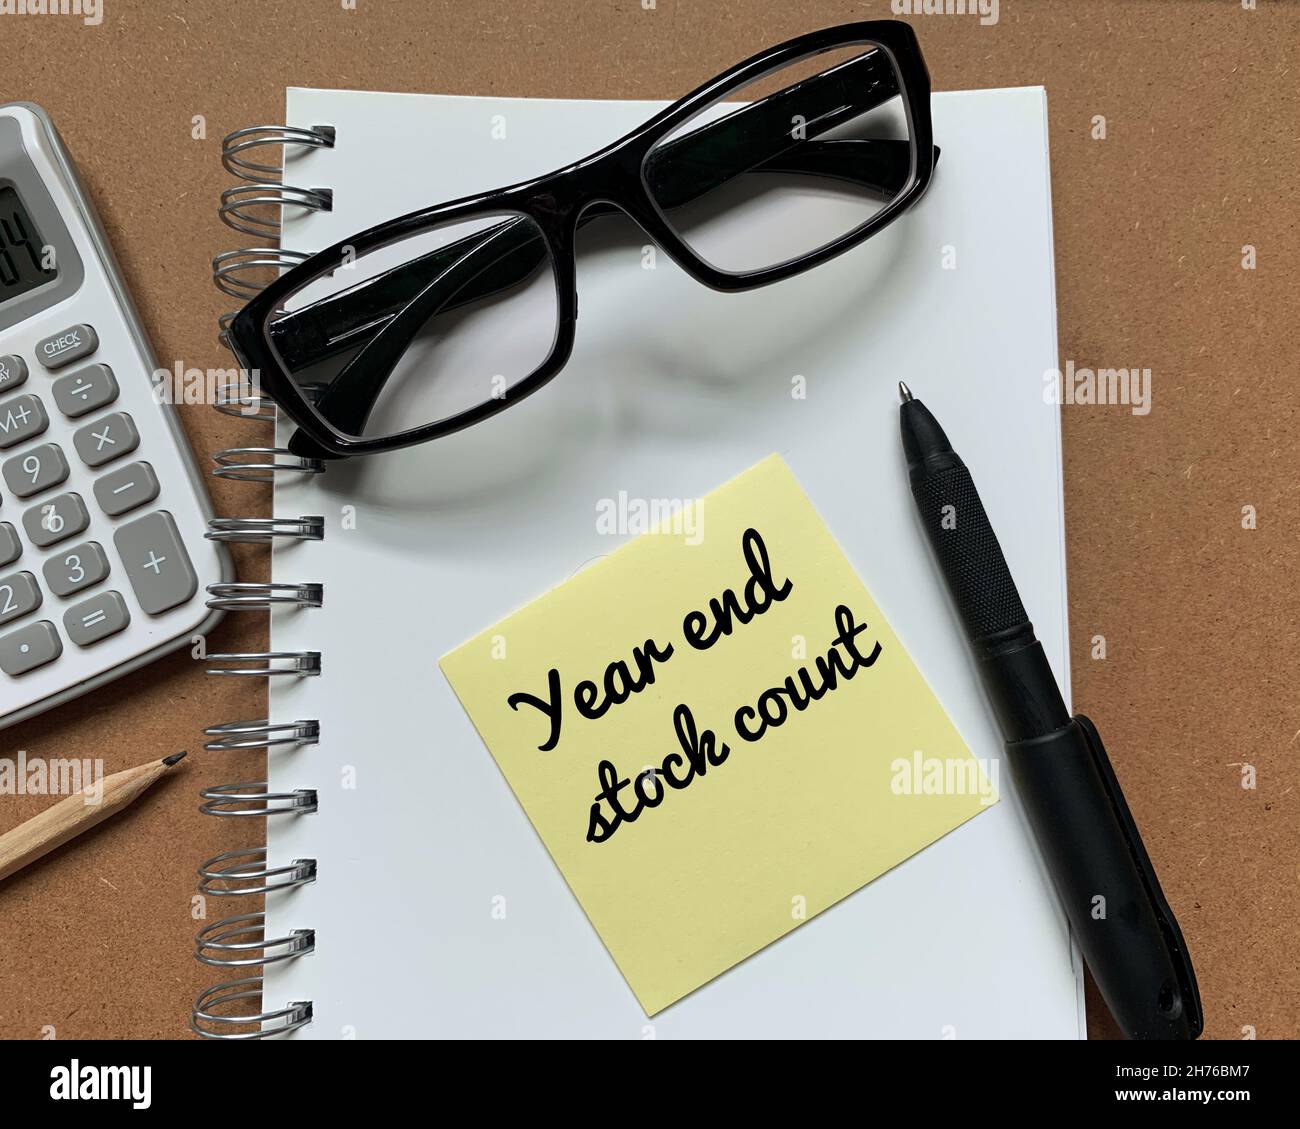 Fin de año stock contar el texto en nota adhesiva con cálculo, lápiz, pluma y gafas al lado de un bloc de notas Foto de stock